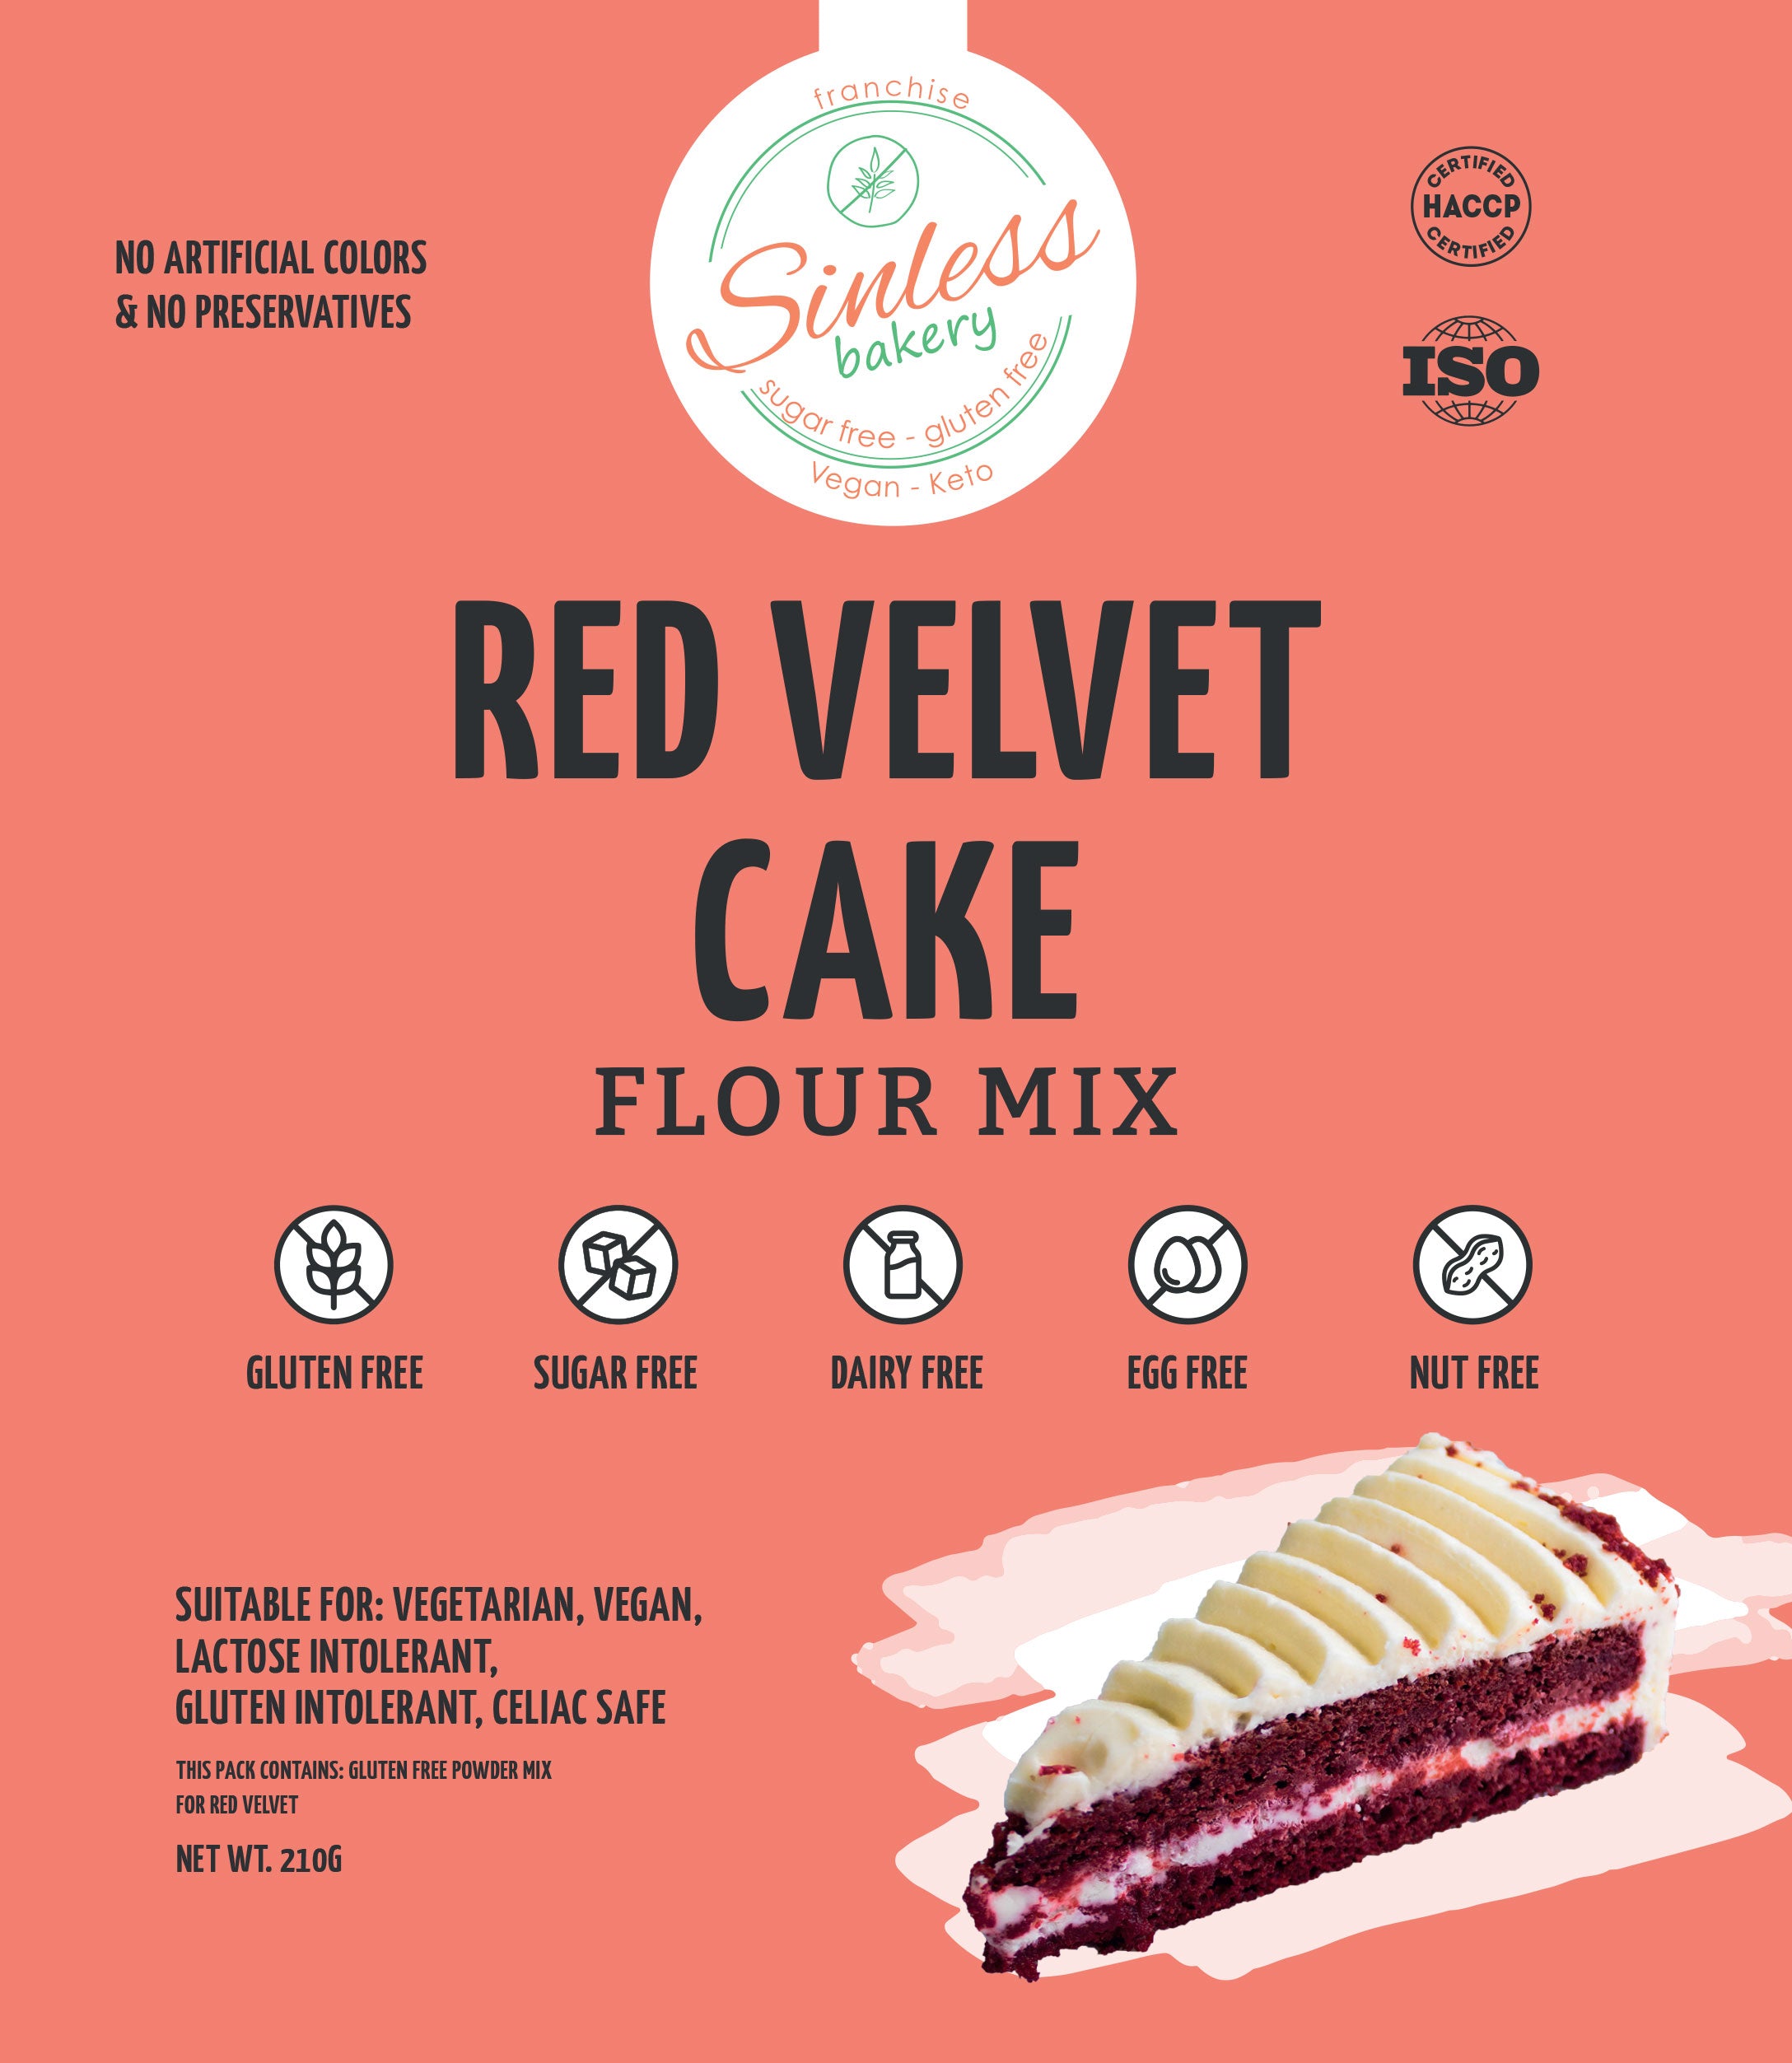 SINLESS BAKERY Red Velvet Cake Flour Mix, 210g